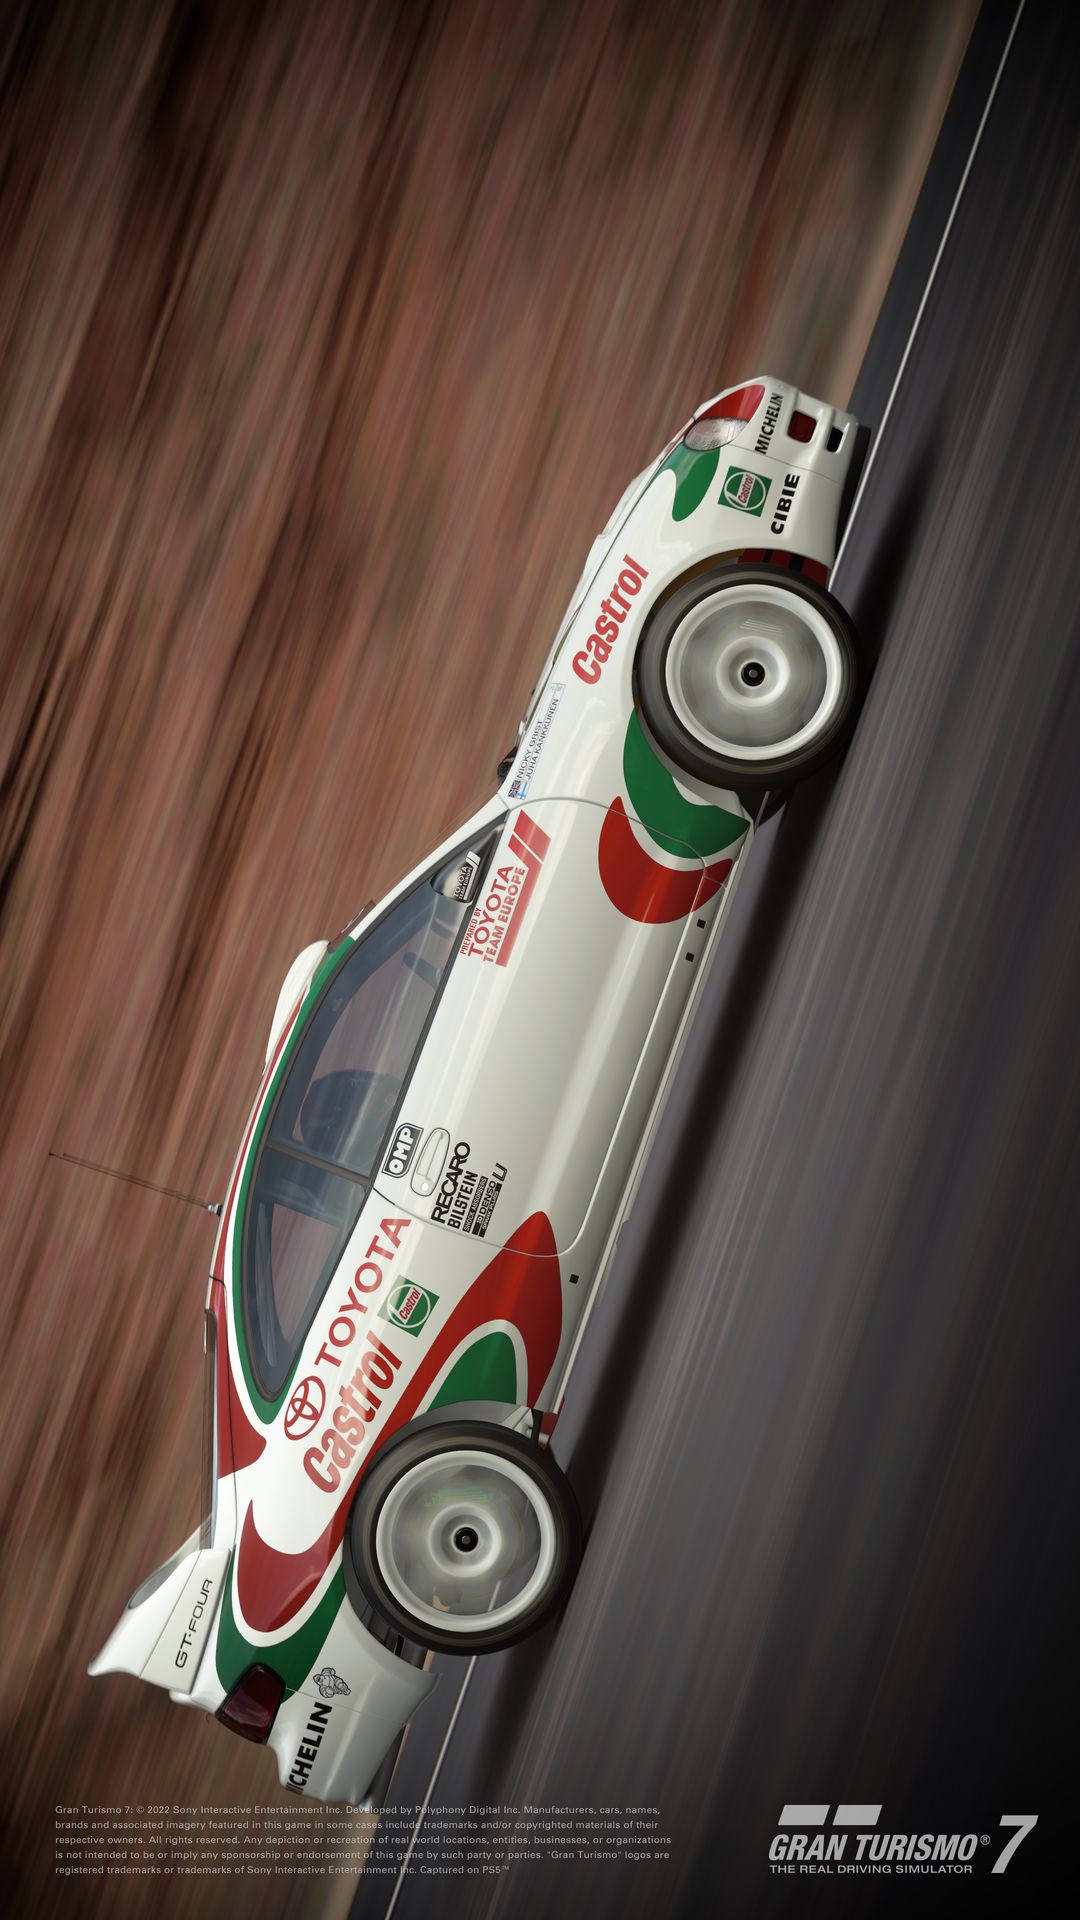 Gran Turismo 7 – Atualização 1.27: 5 novos carros